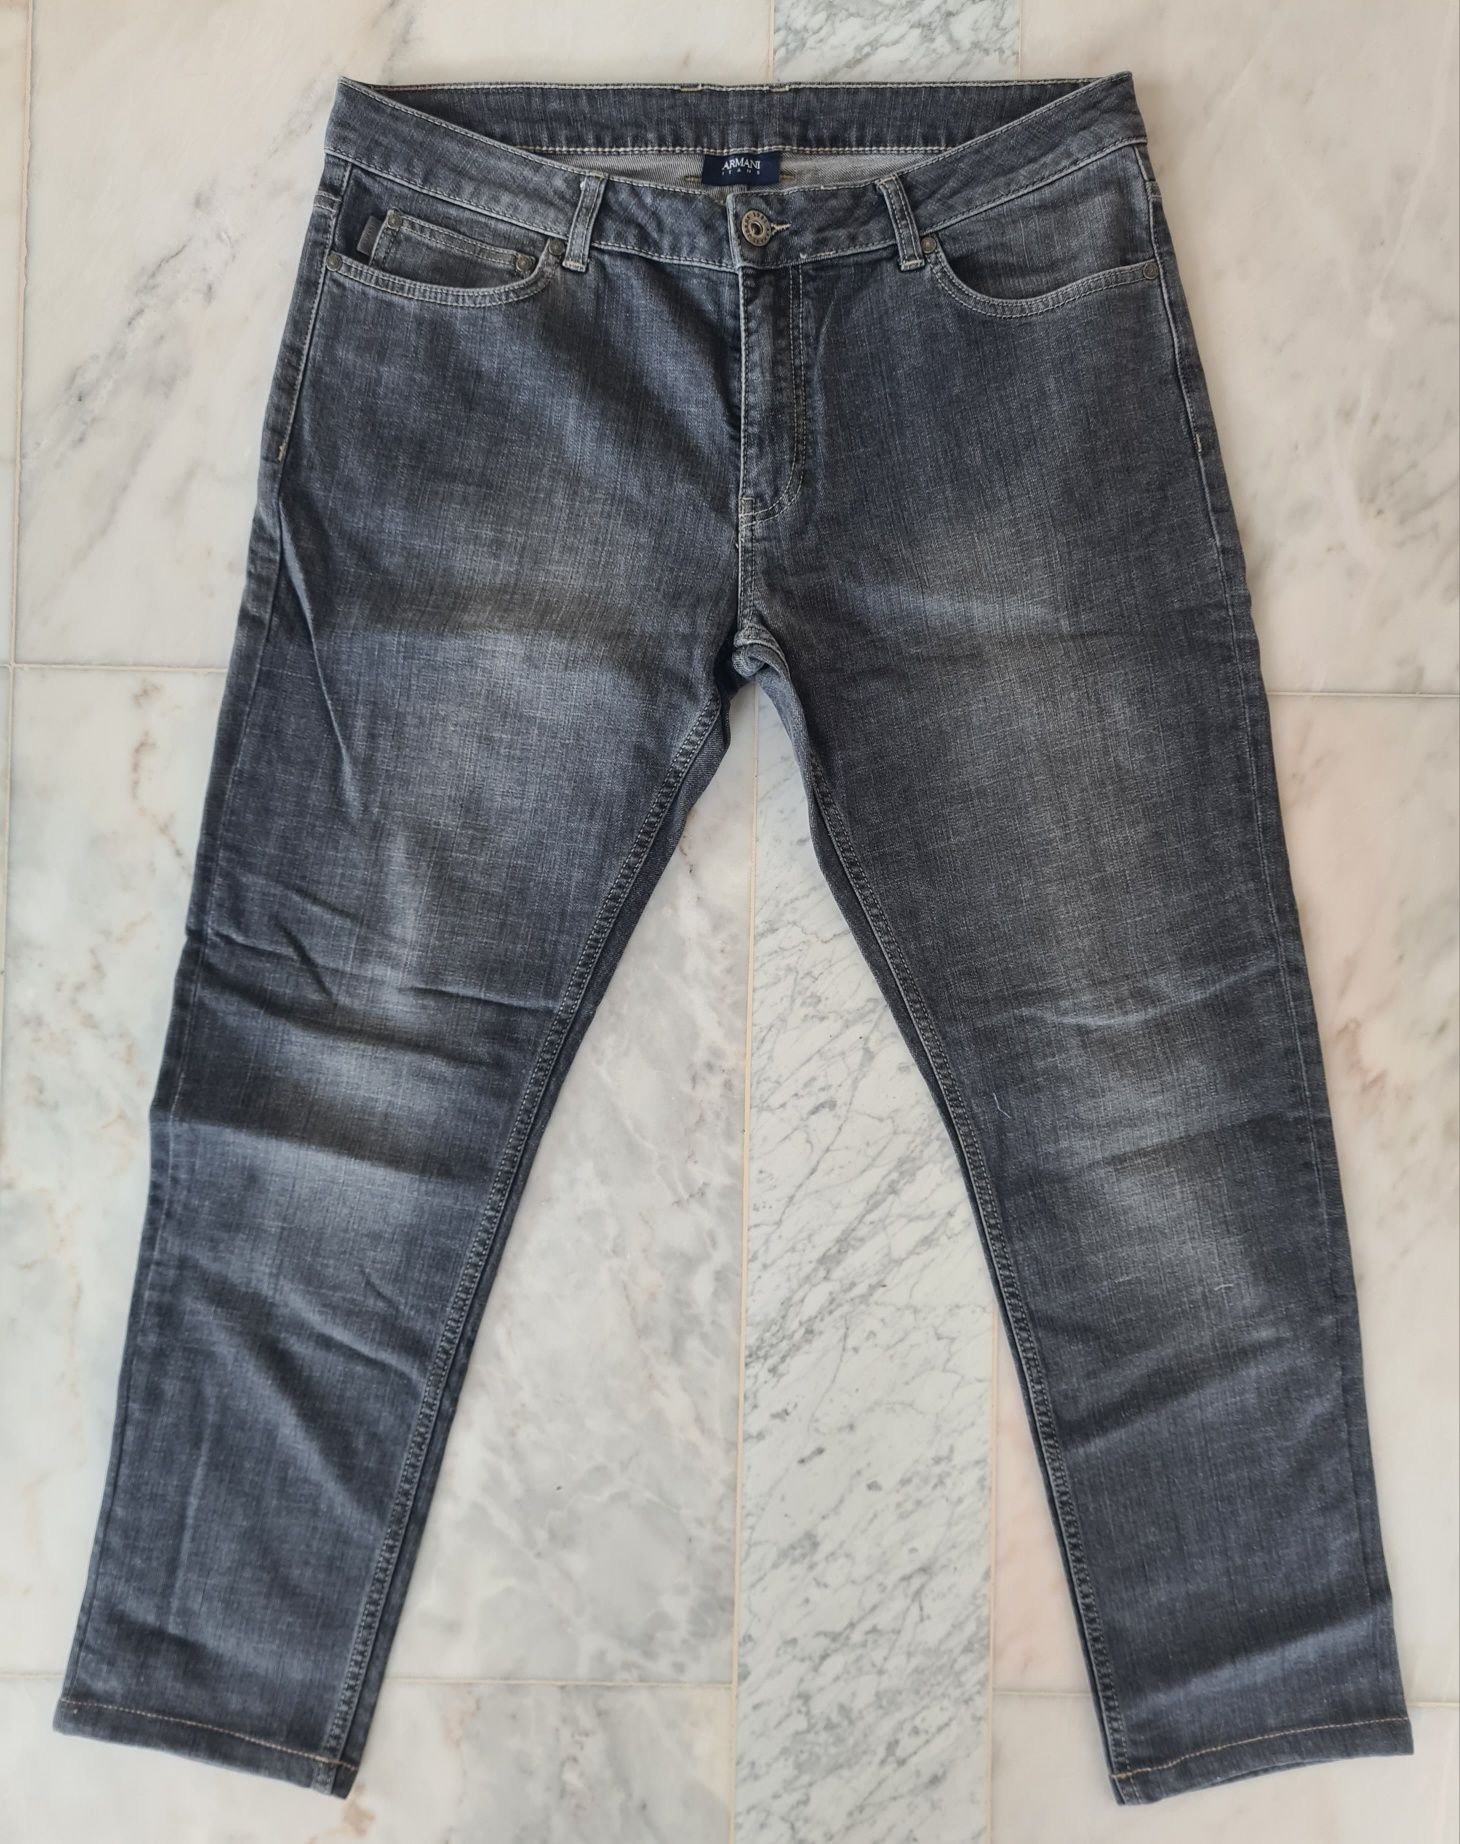 Spodnie jeansowe meskie armanii jeans XL W40 L34 szare